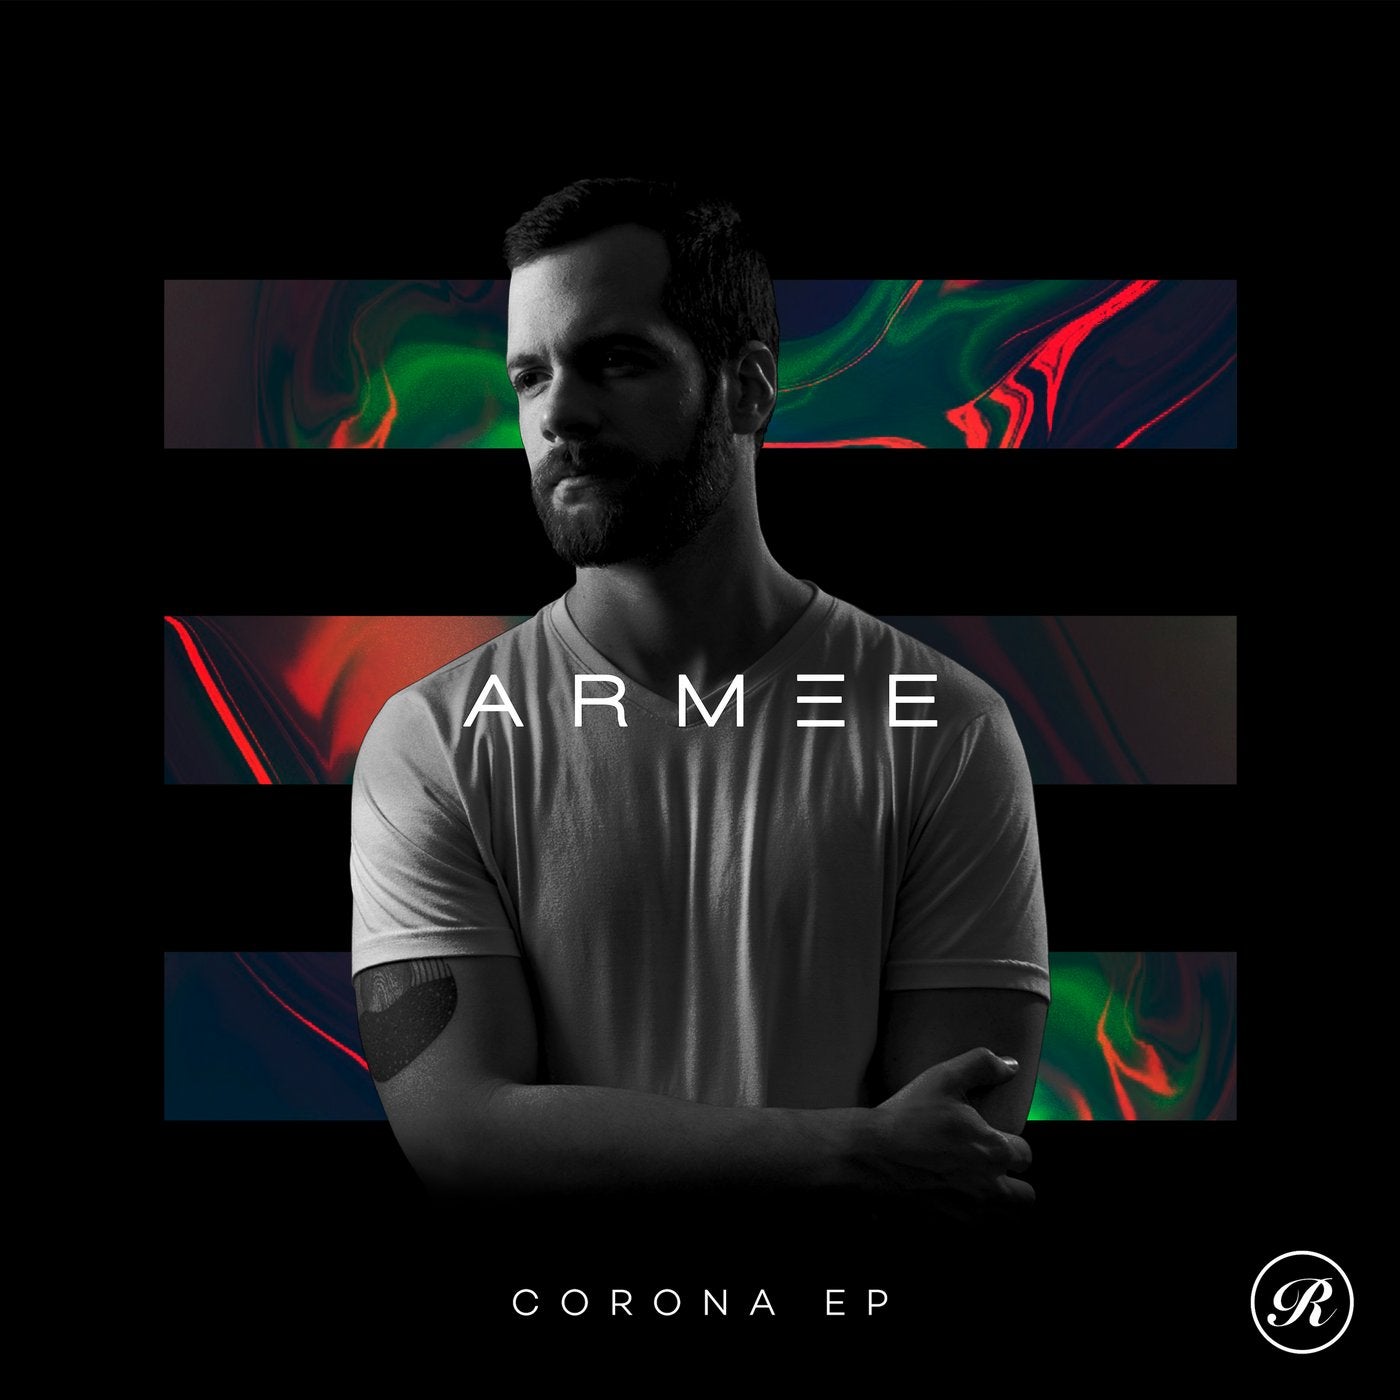 Corona EP